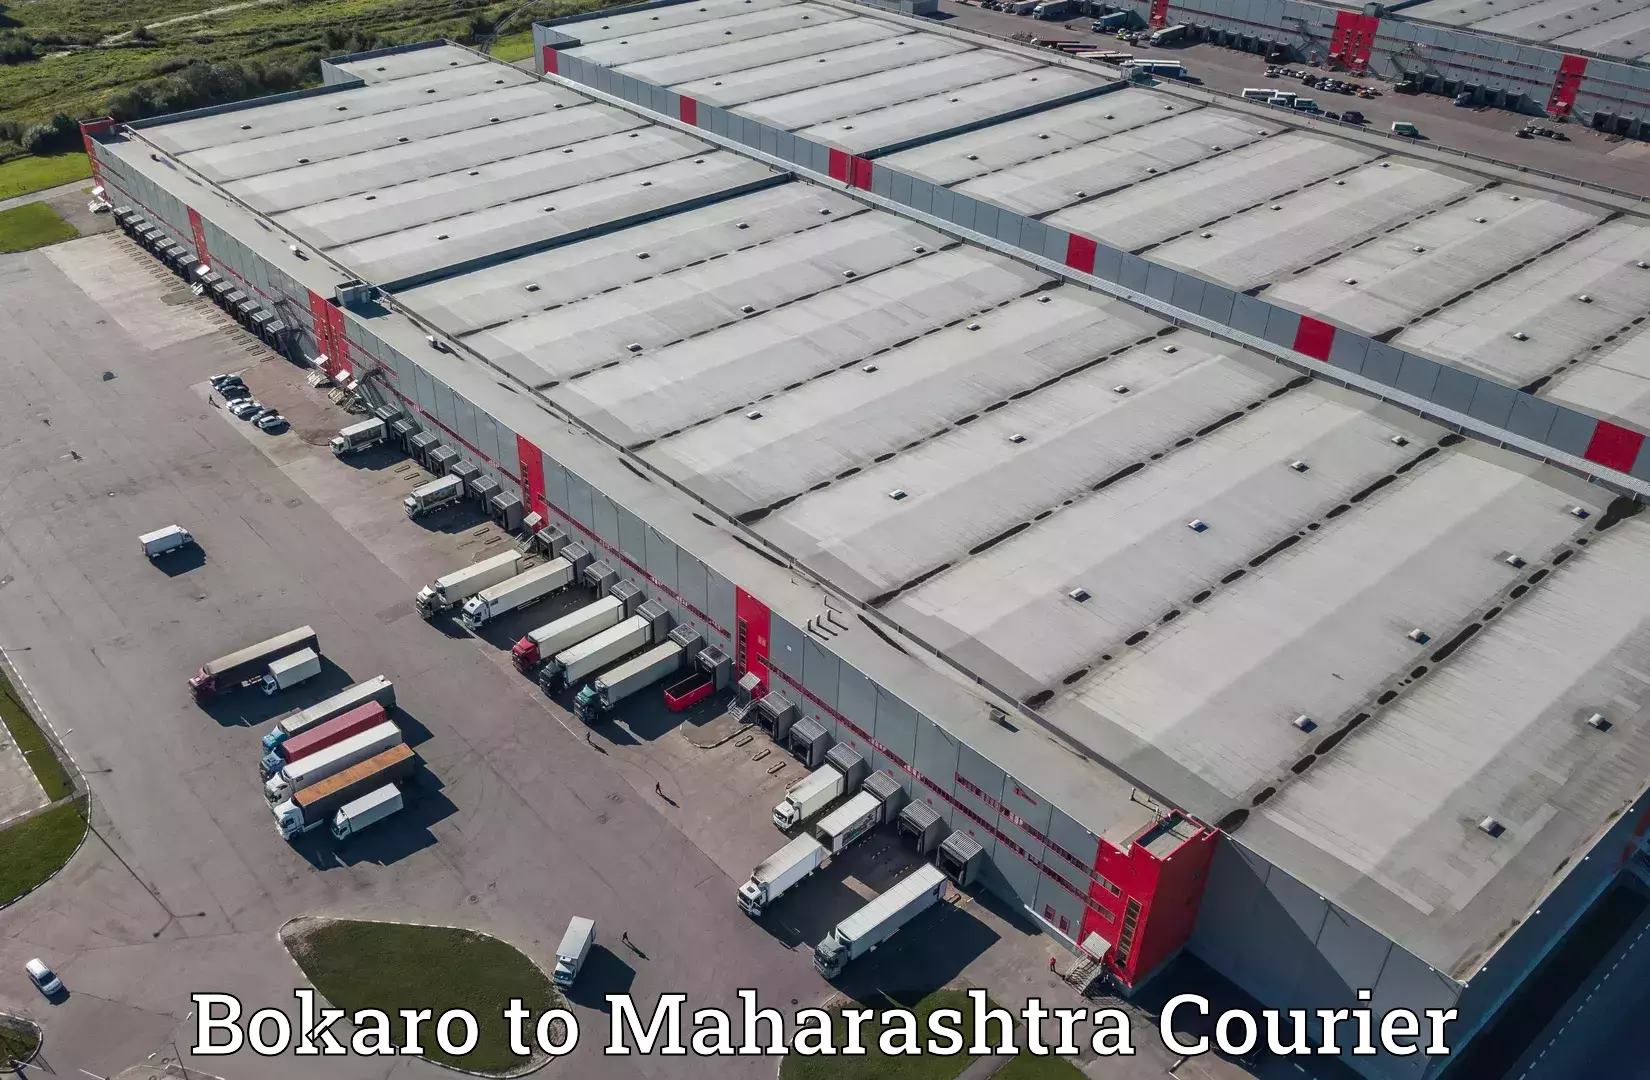 Automated parcel services Bokaro to Maharashtra